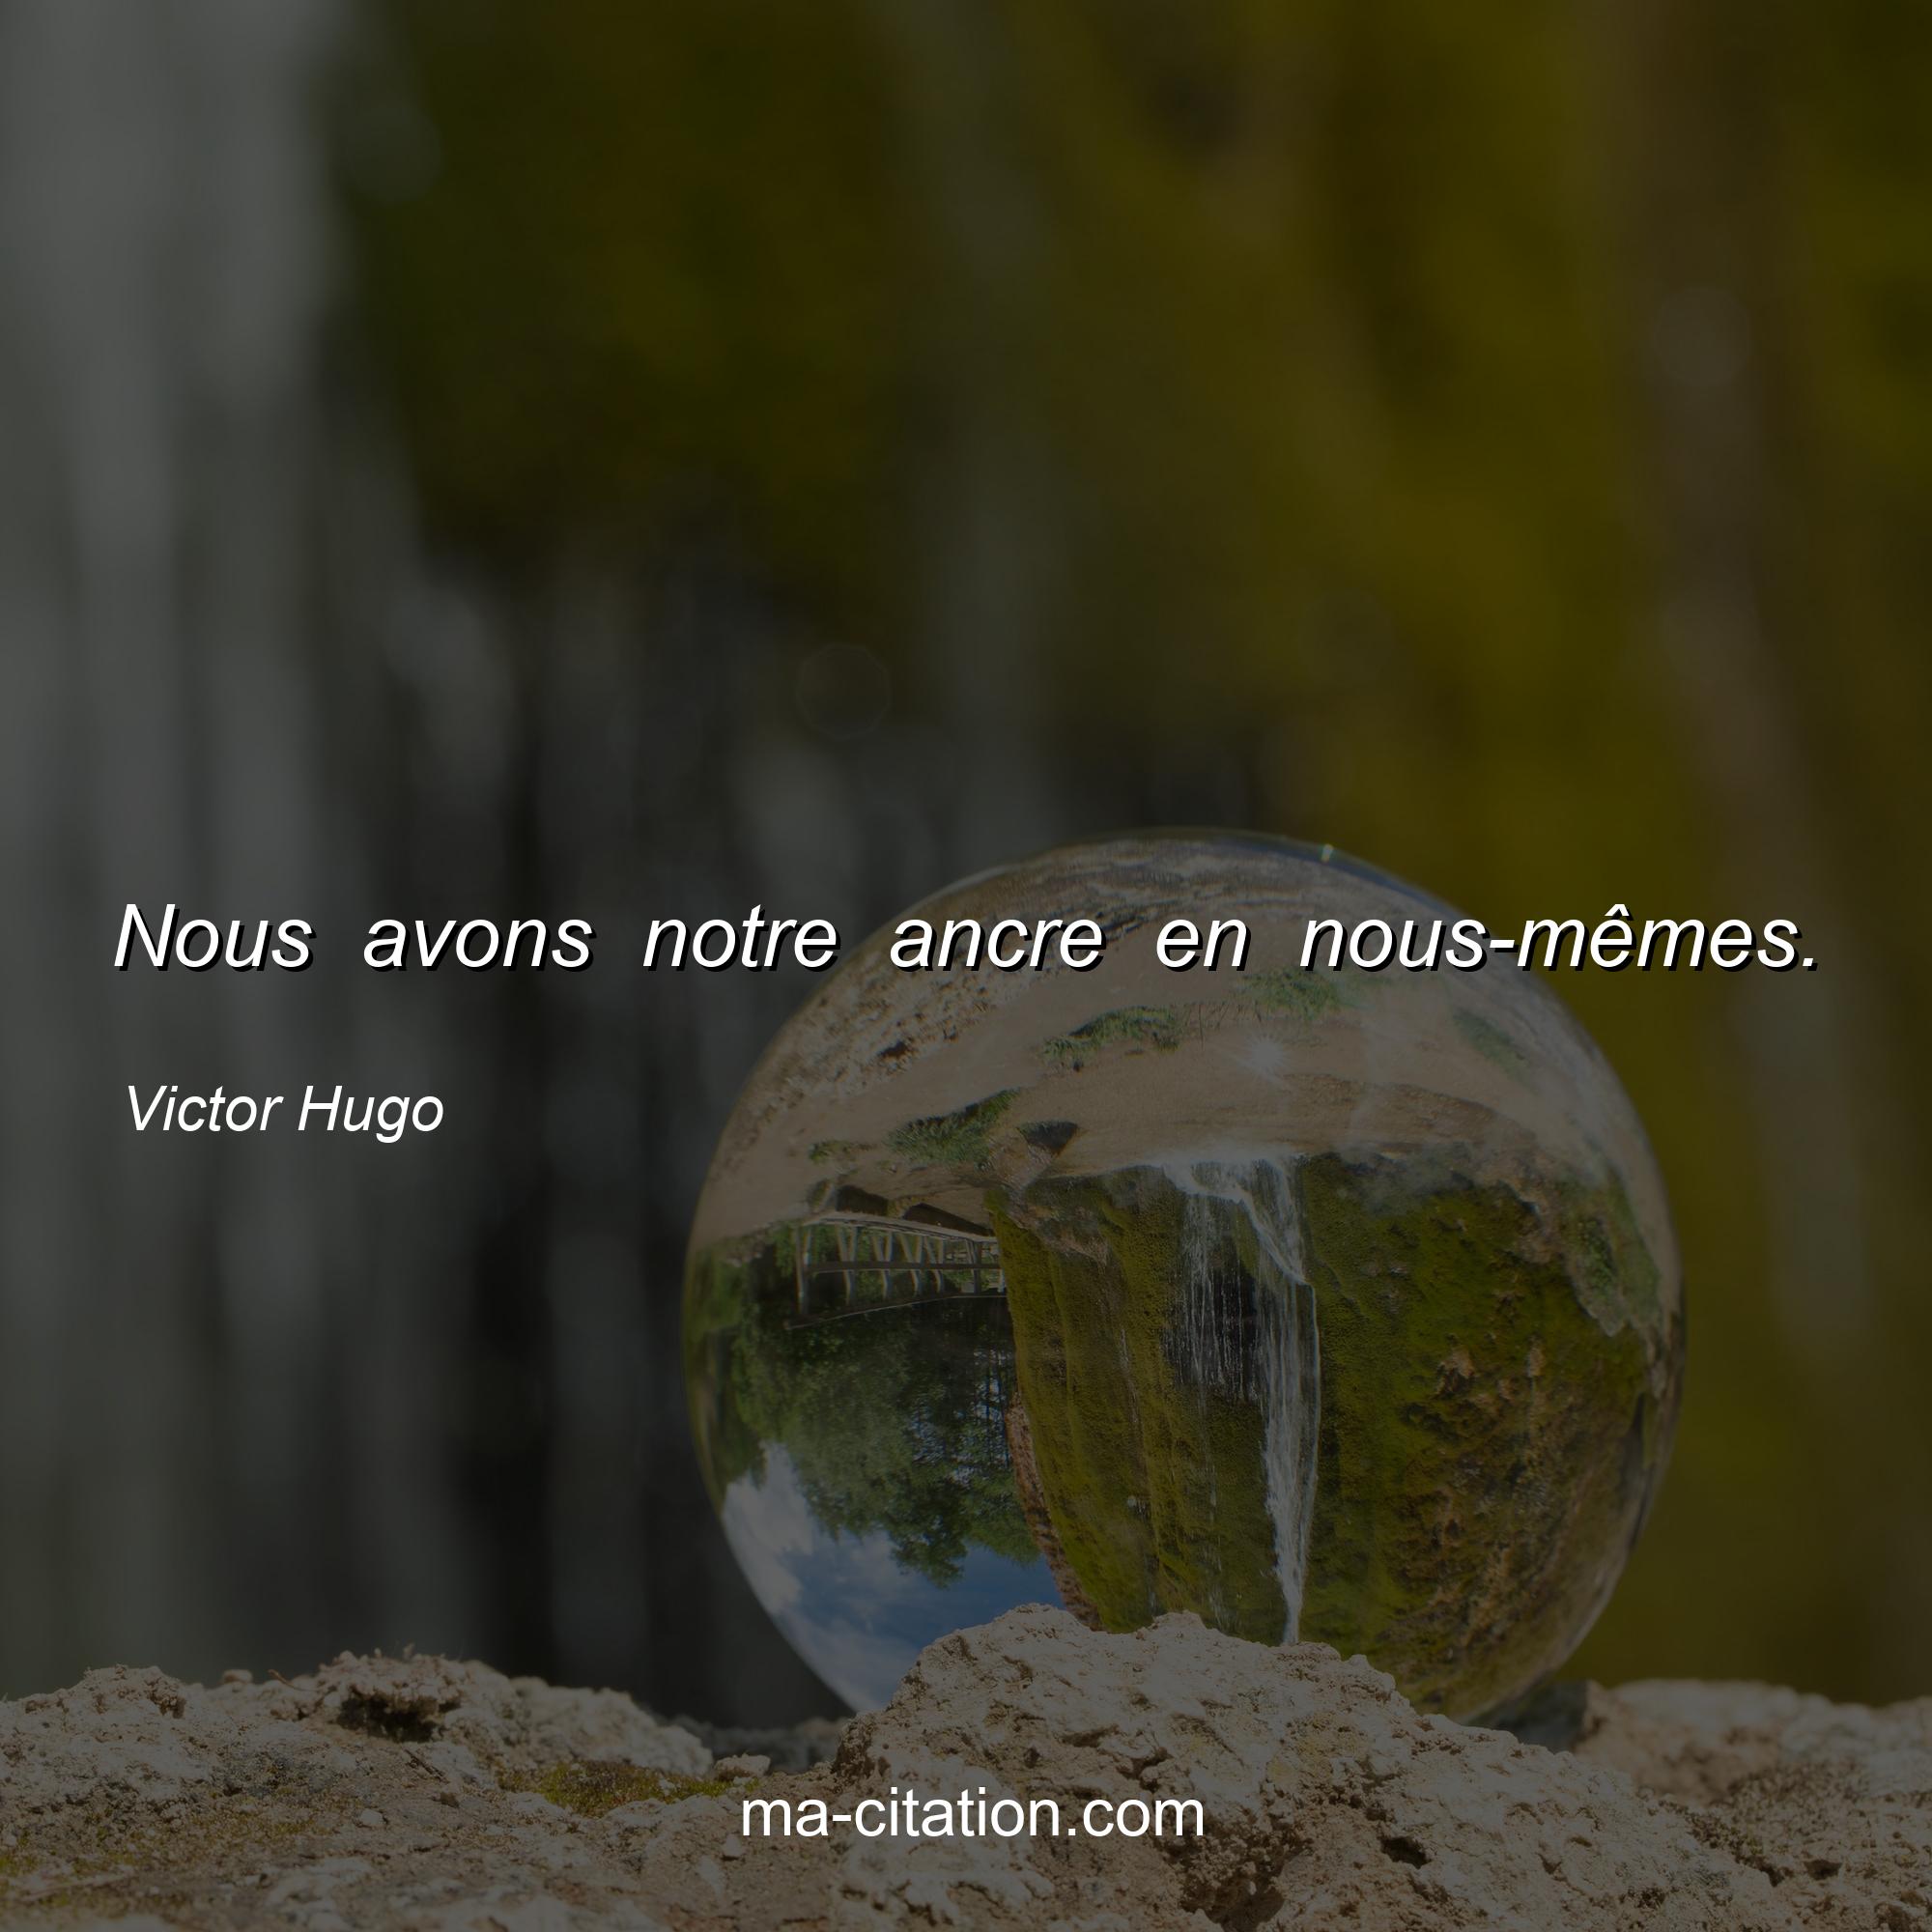 Victor Hugo : Nous avons notre ancre en nous-mêmes.